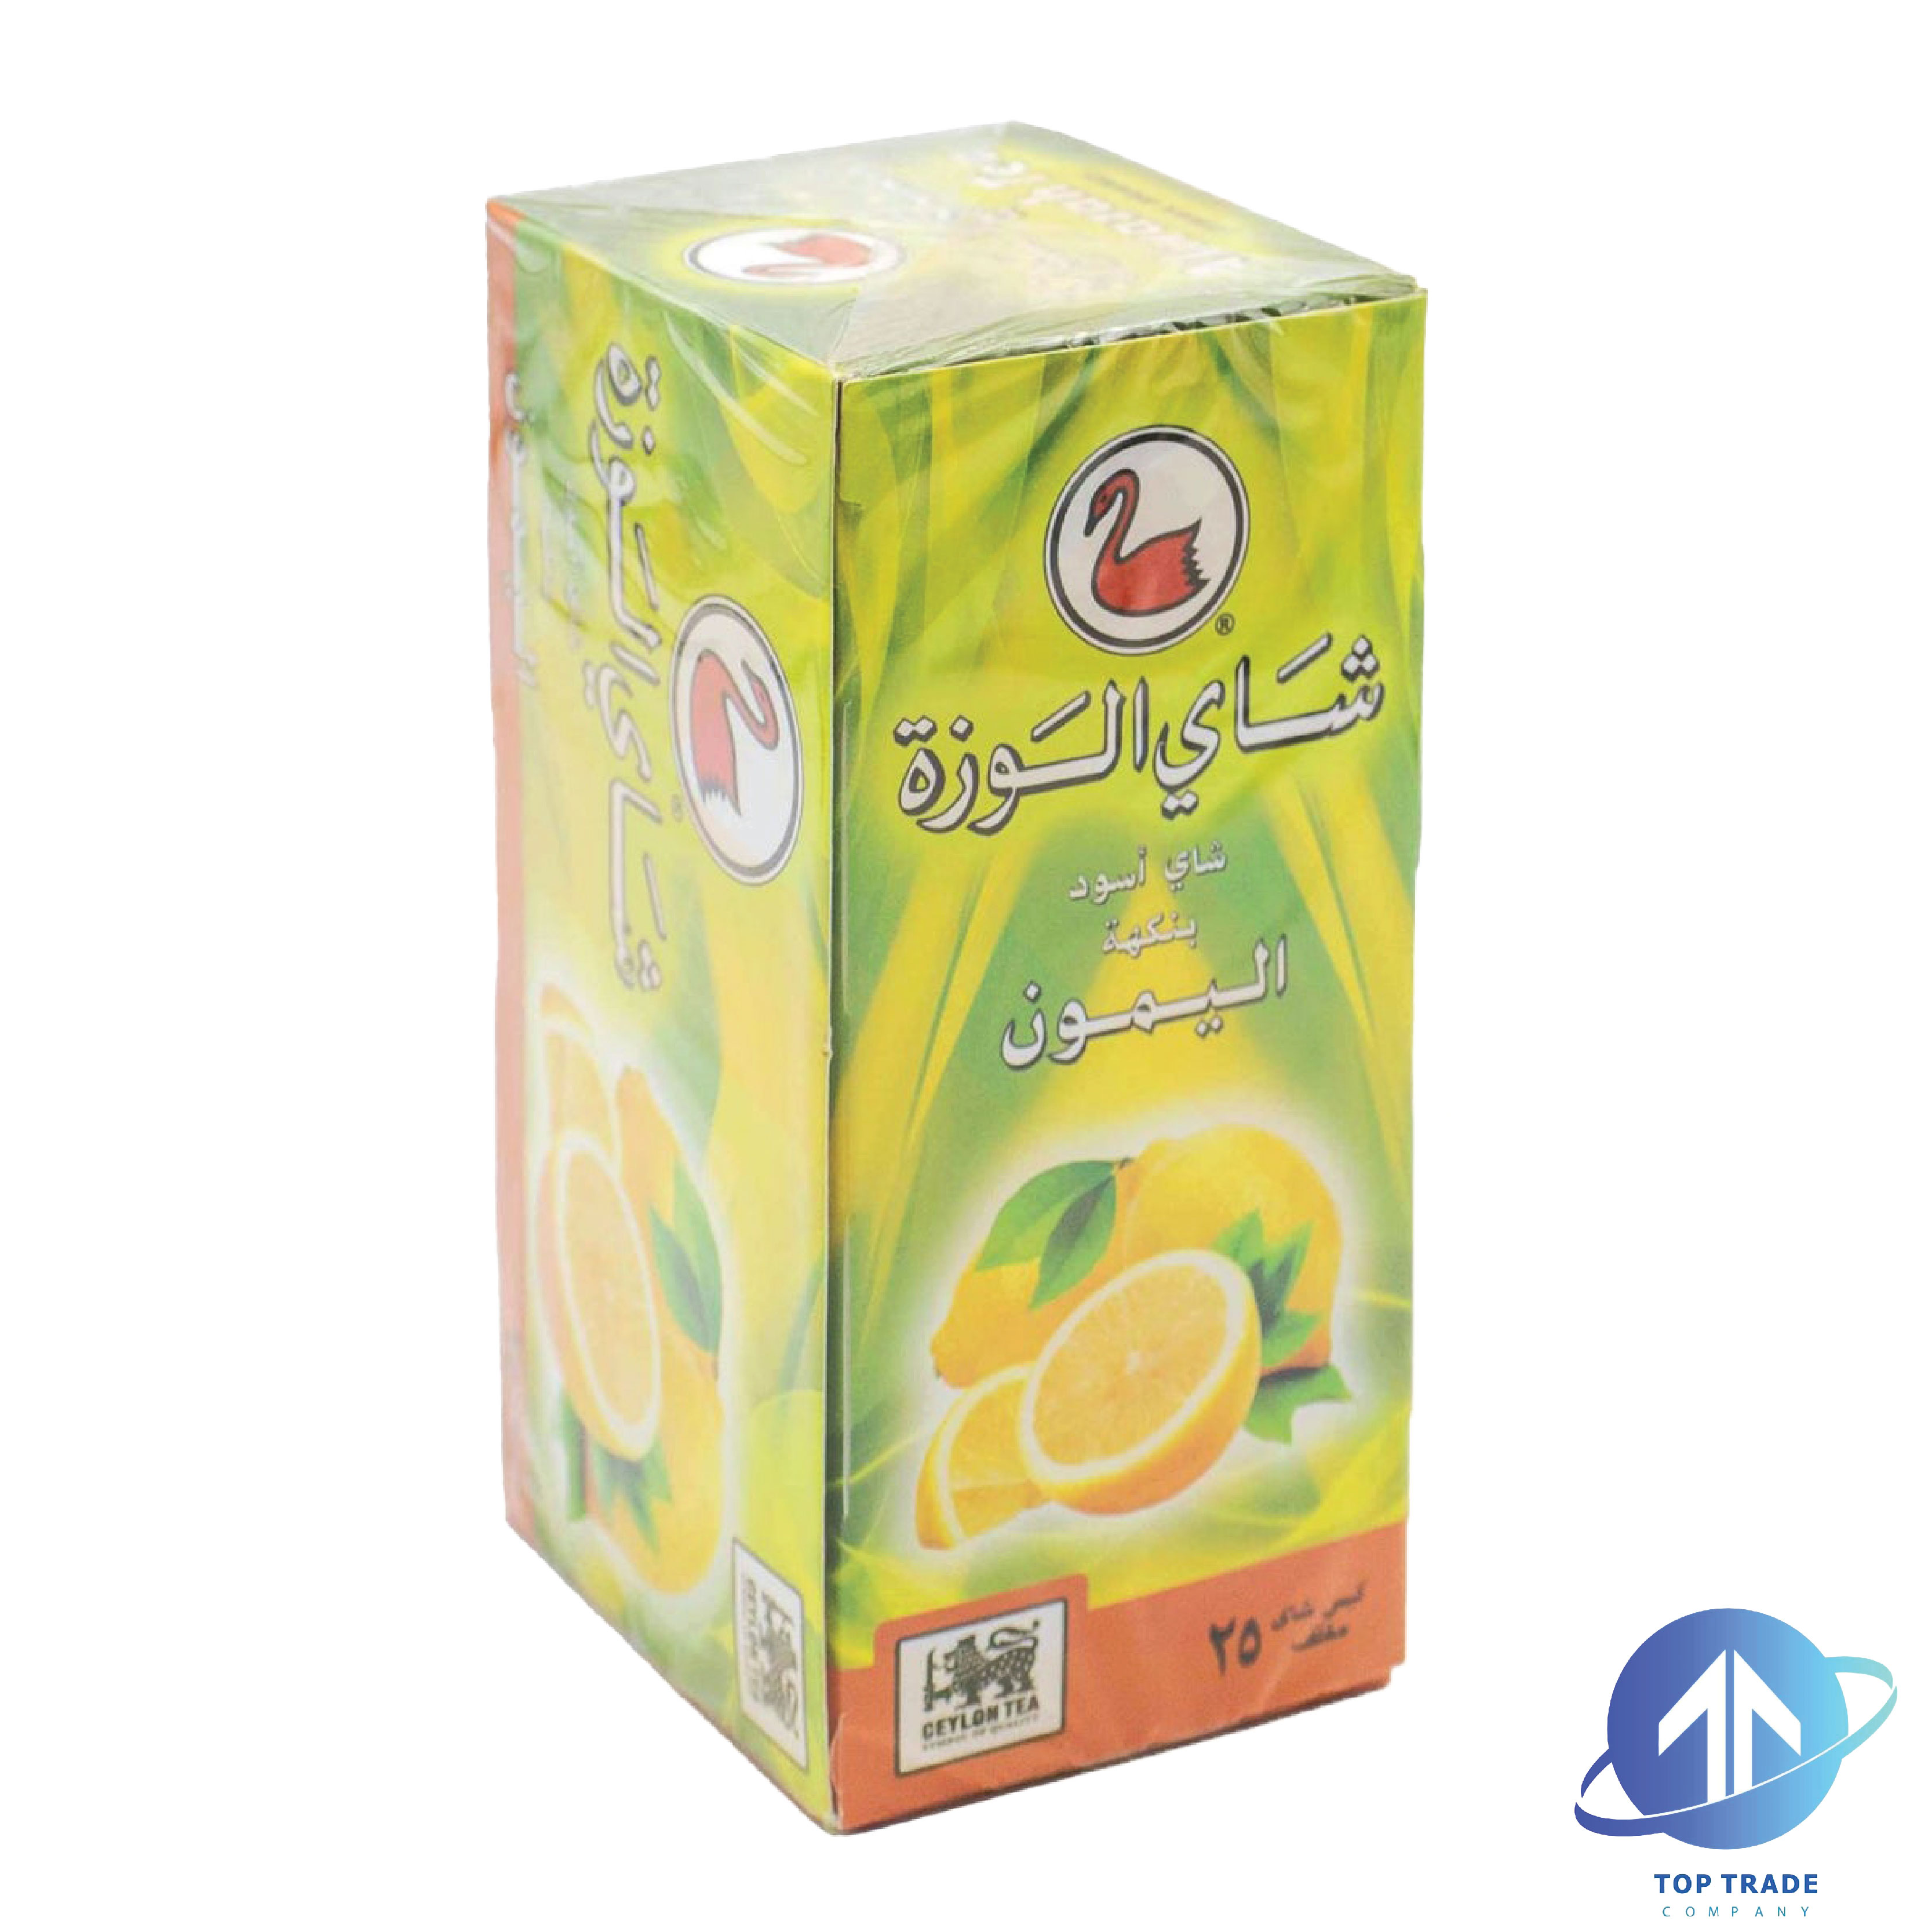 AlWazah Ceylon Lemon Tea 25 